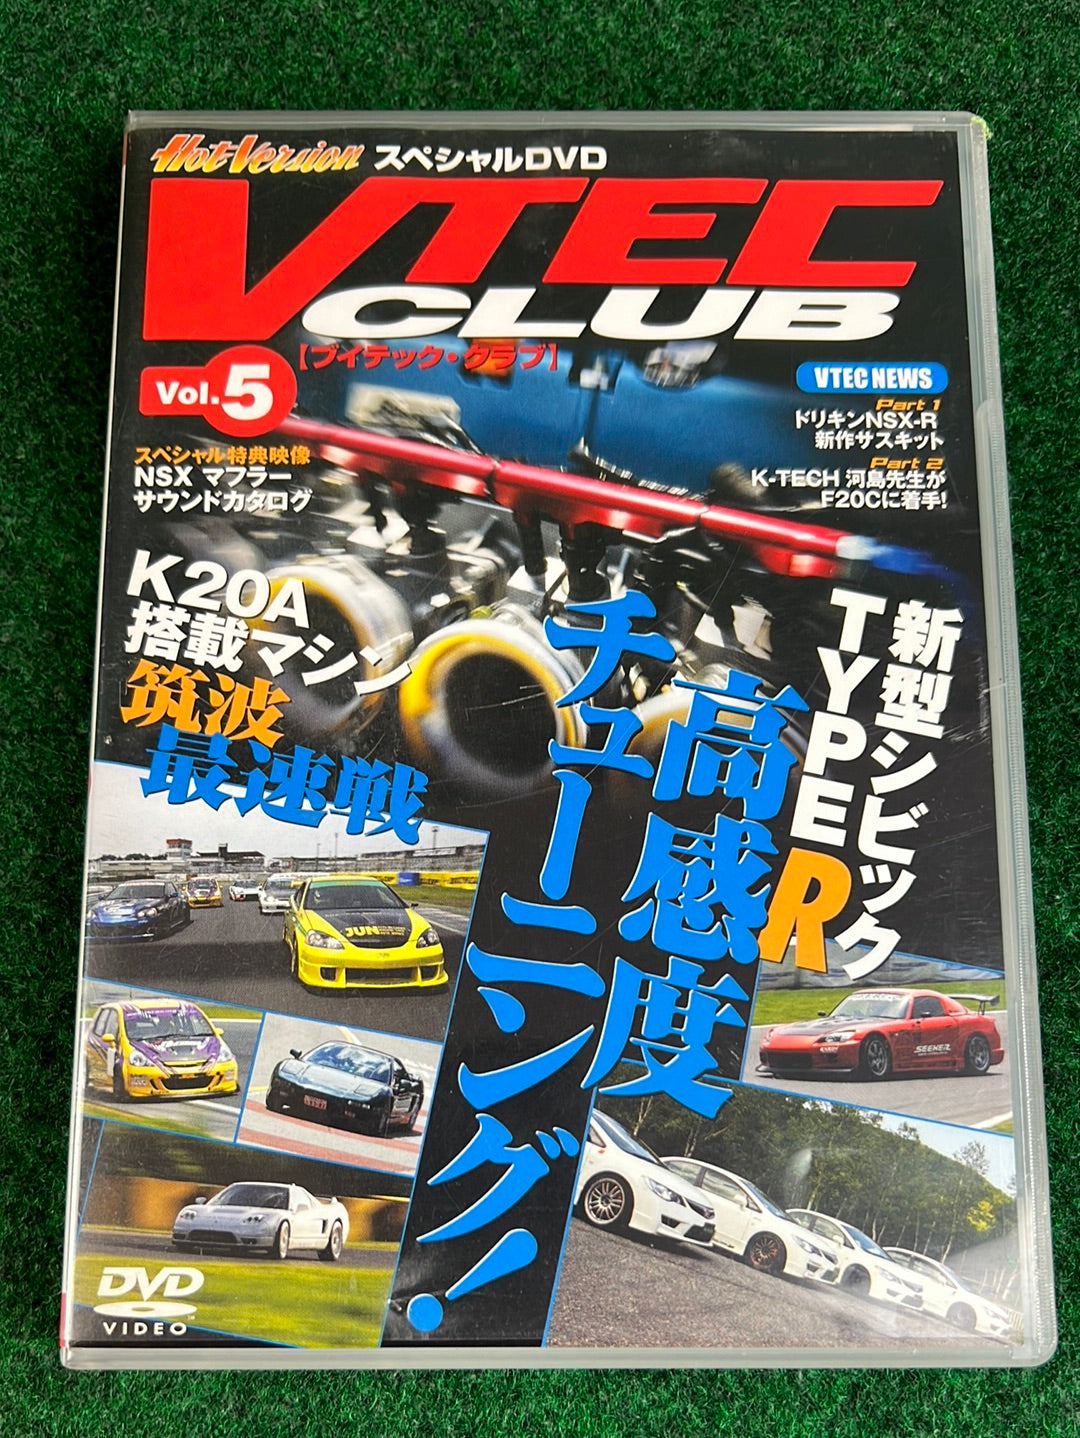 Hot Version DVD: VTEC CLUB - Vol. 5